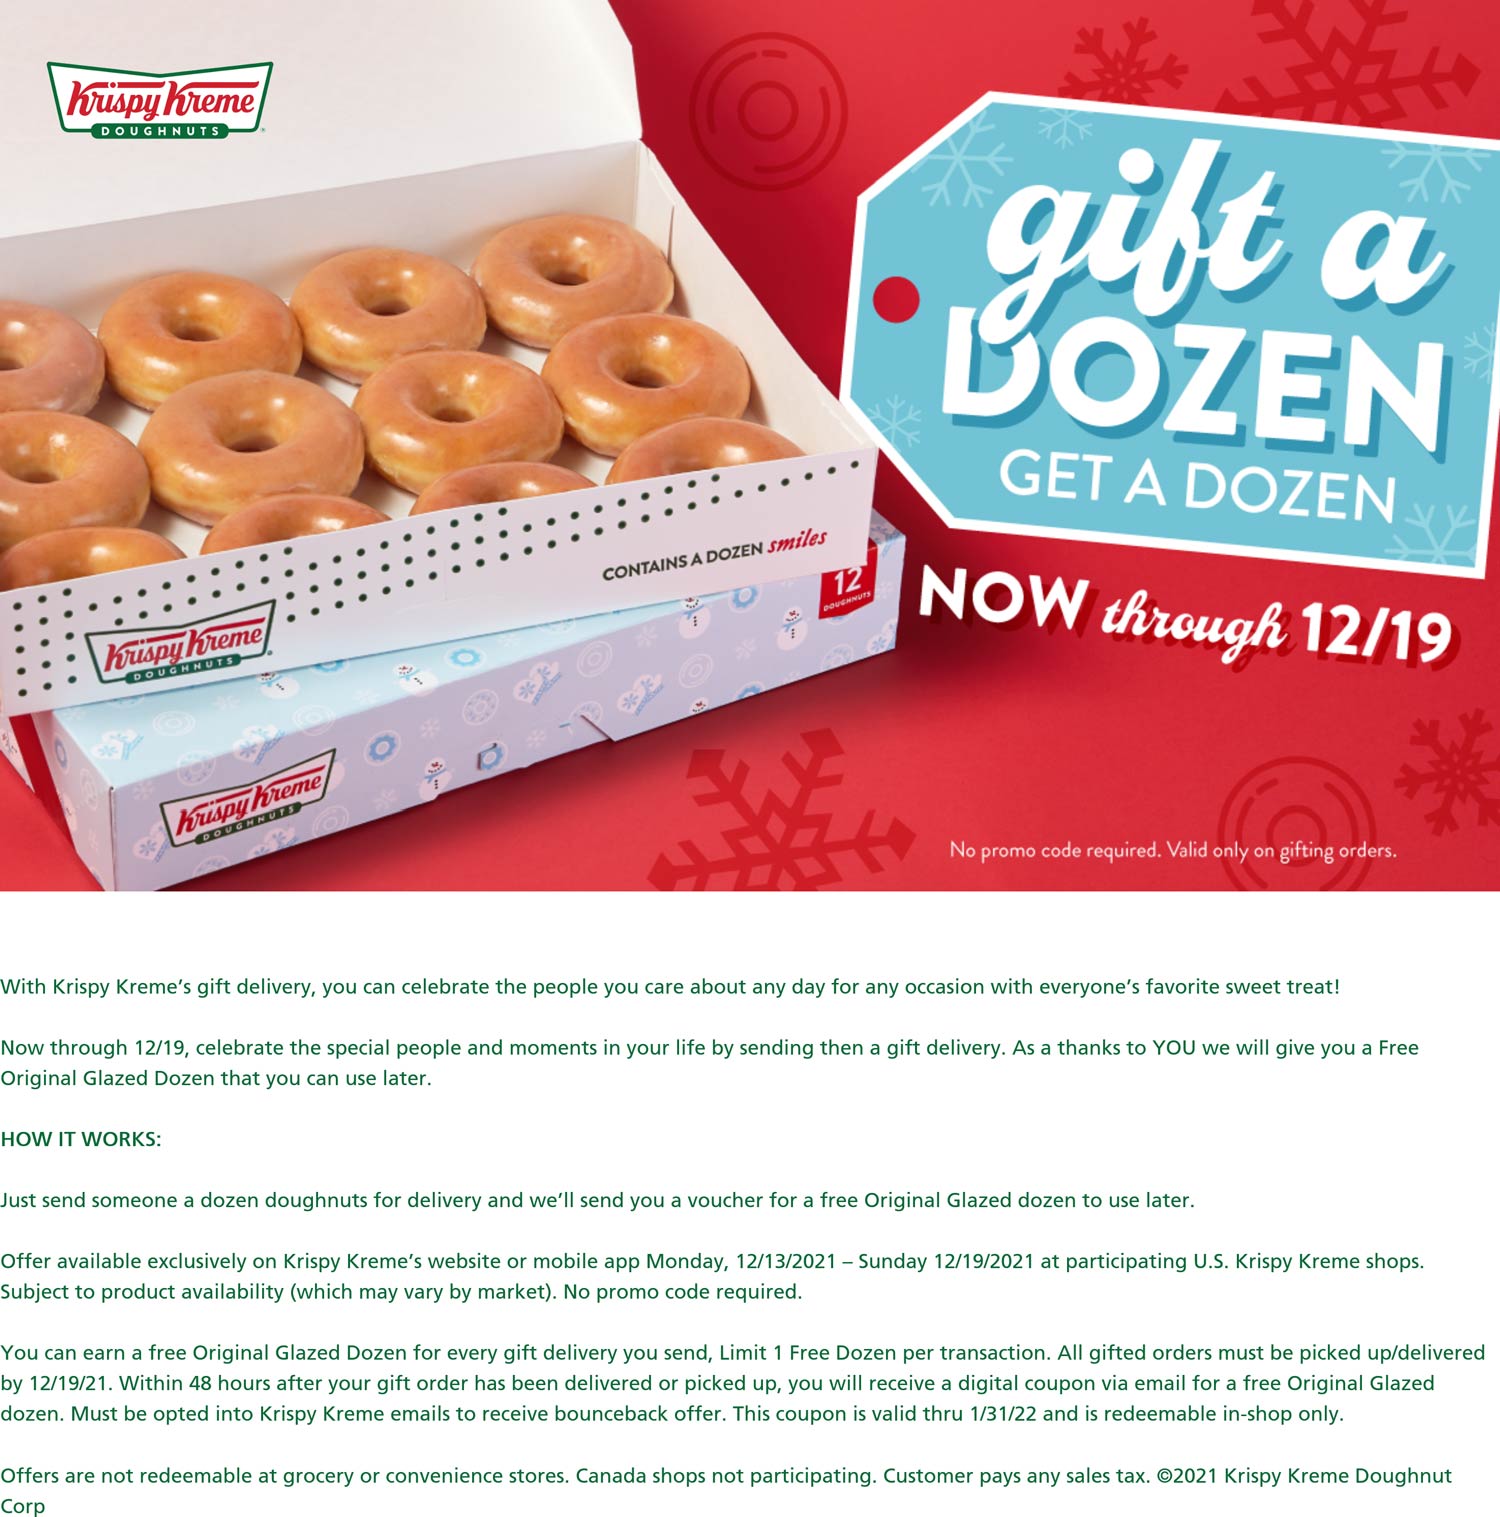 Krispy Kreme restaurants Coupon  Gift a dozen get a free dozen doughnuts at Krispy Kreme #krispykreme 